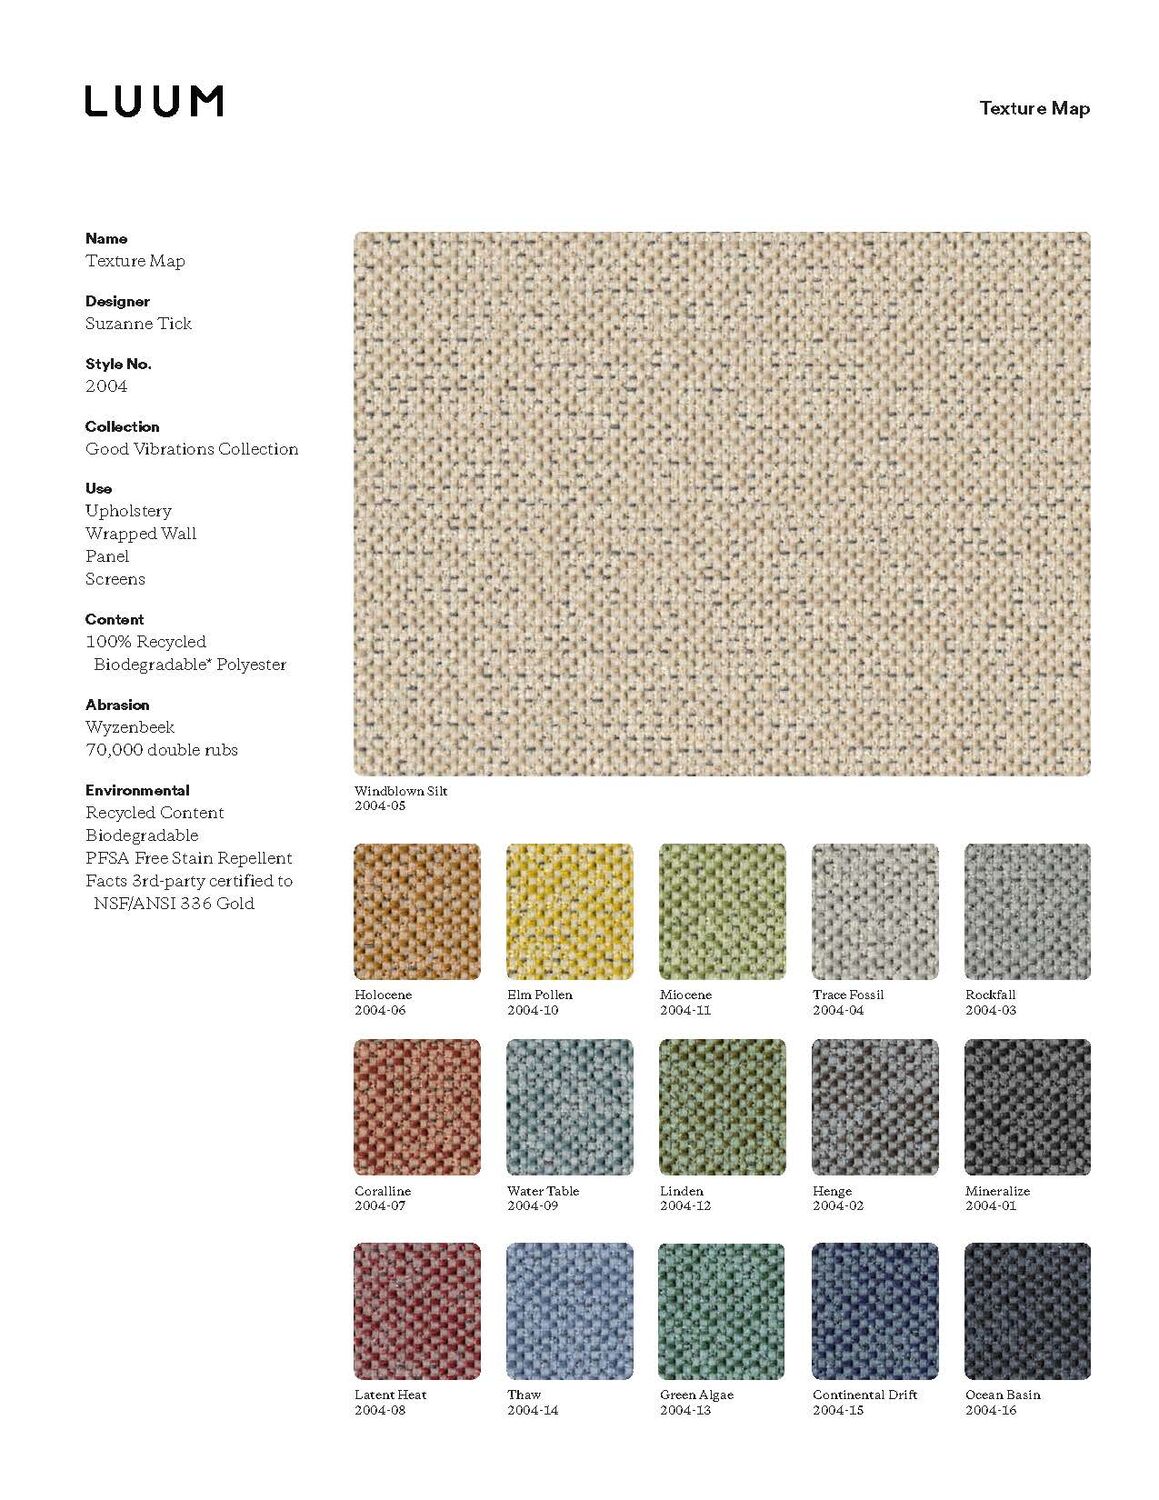 Texture Map - Elm Pollen - 2004 - 10 Sample Card